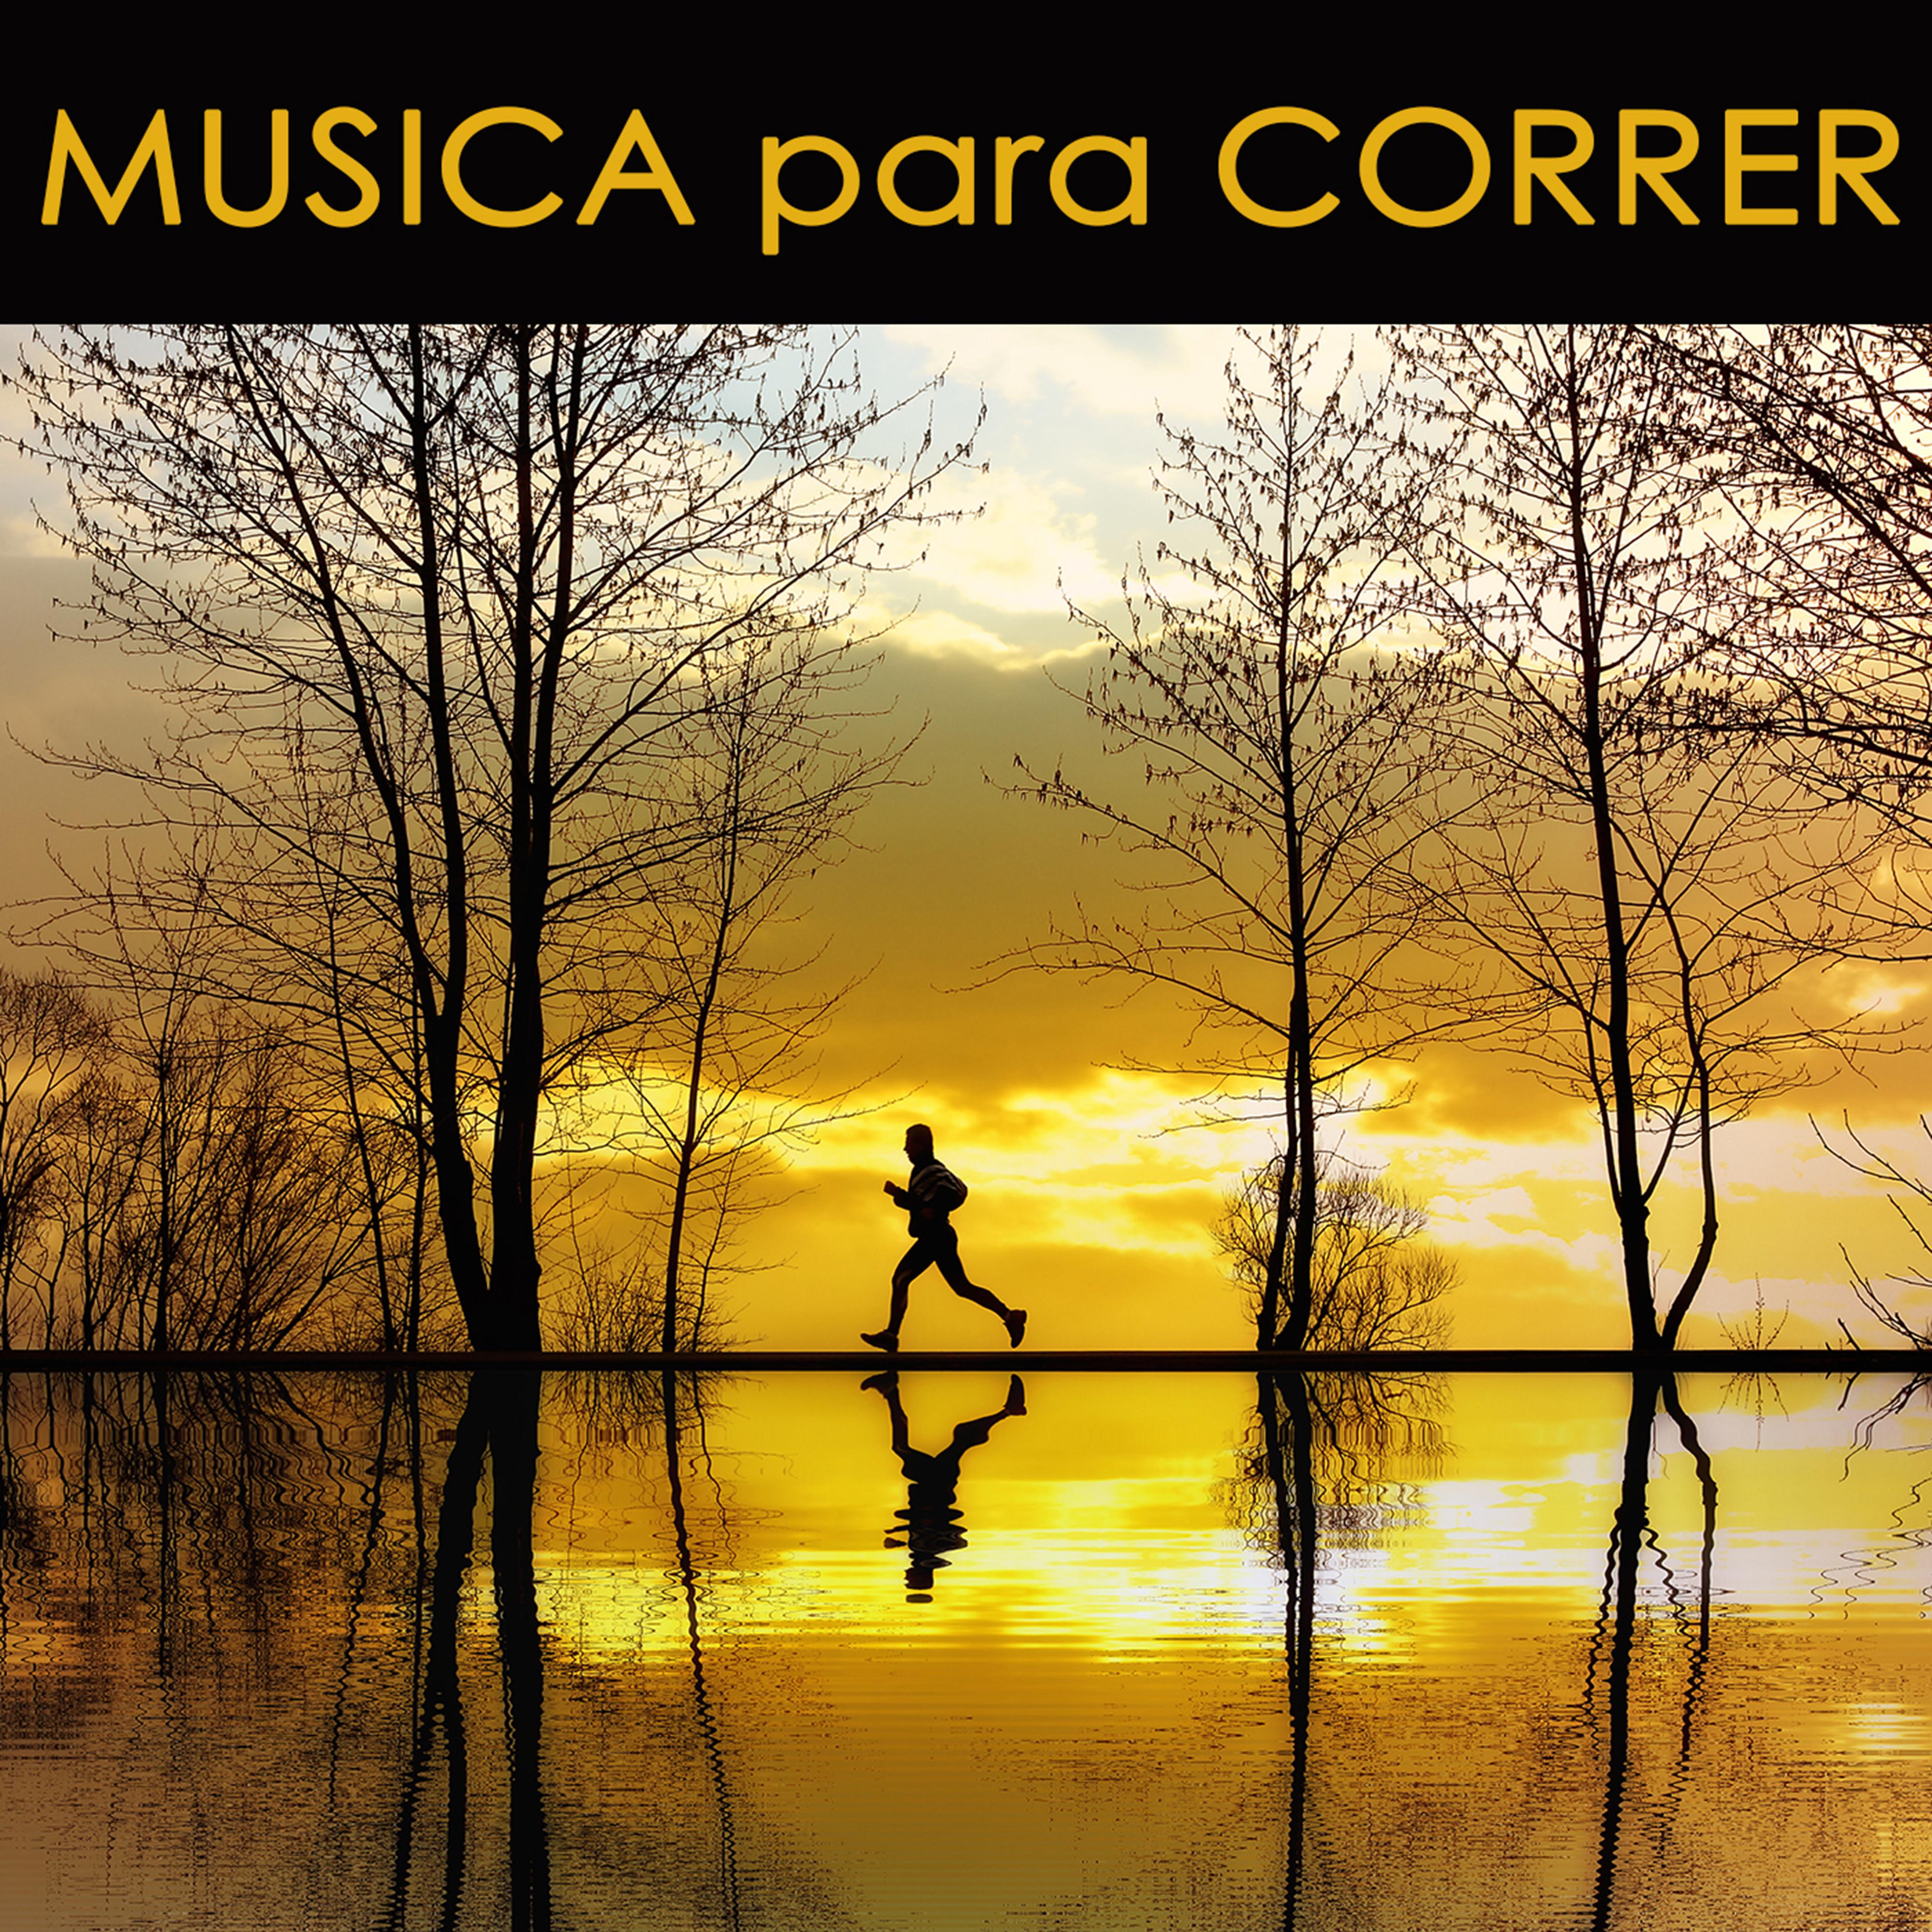 Musica para Correr – Canciones para Correr y Musica Electronica para Aerobica y Cardio, Fitnes y Deporte